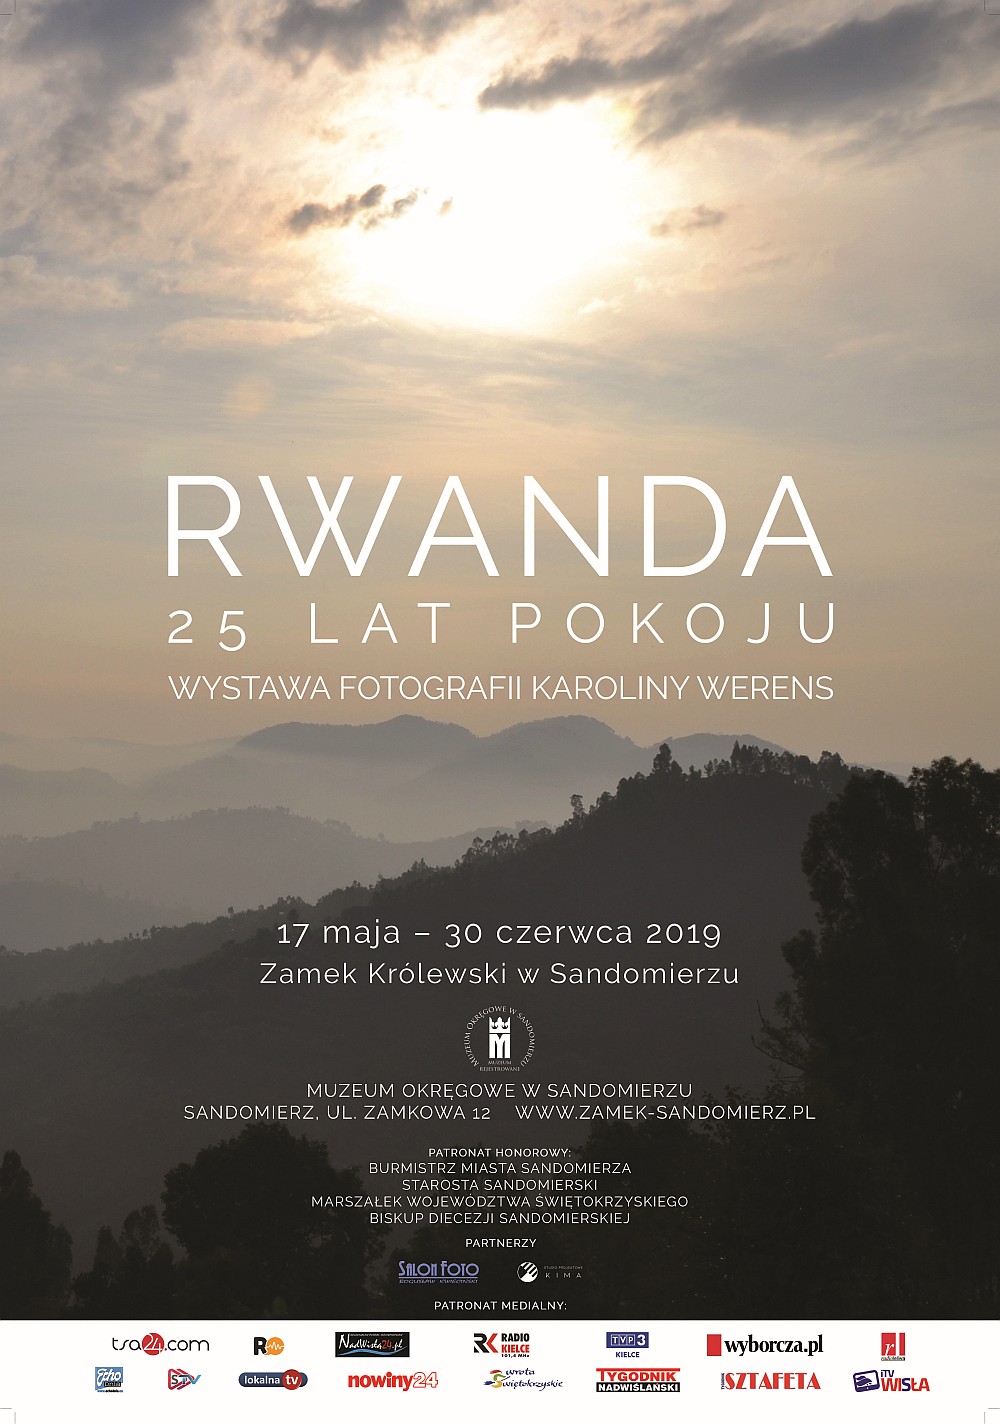 RWANDA - 25 lat pokoju